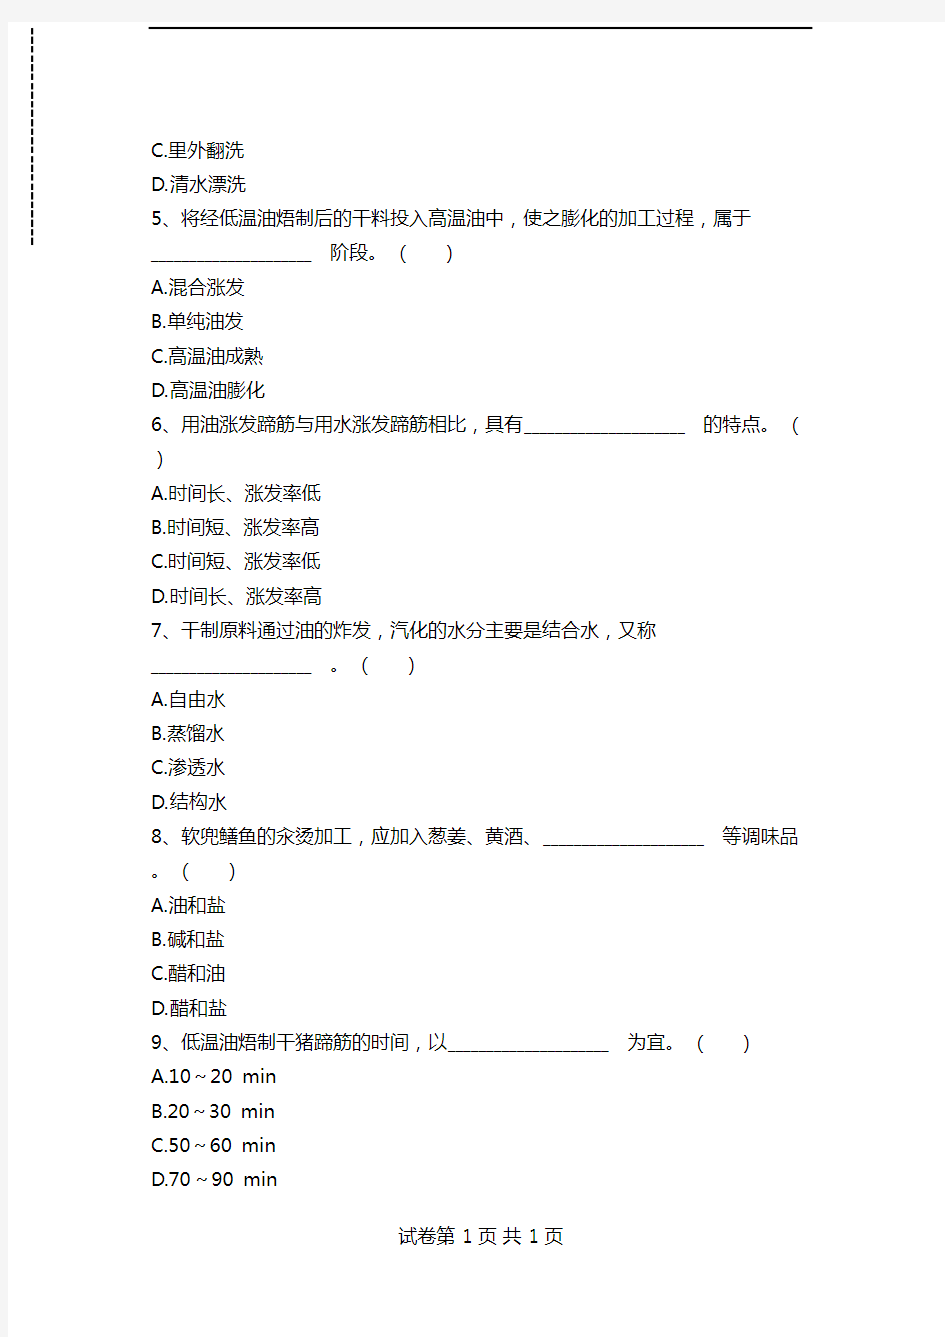 中式烹调师考试单项选择考试卷模拟考试题_11113.doc